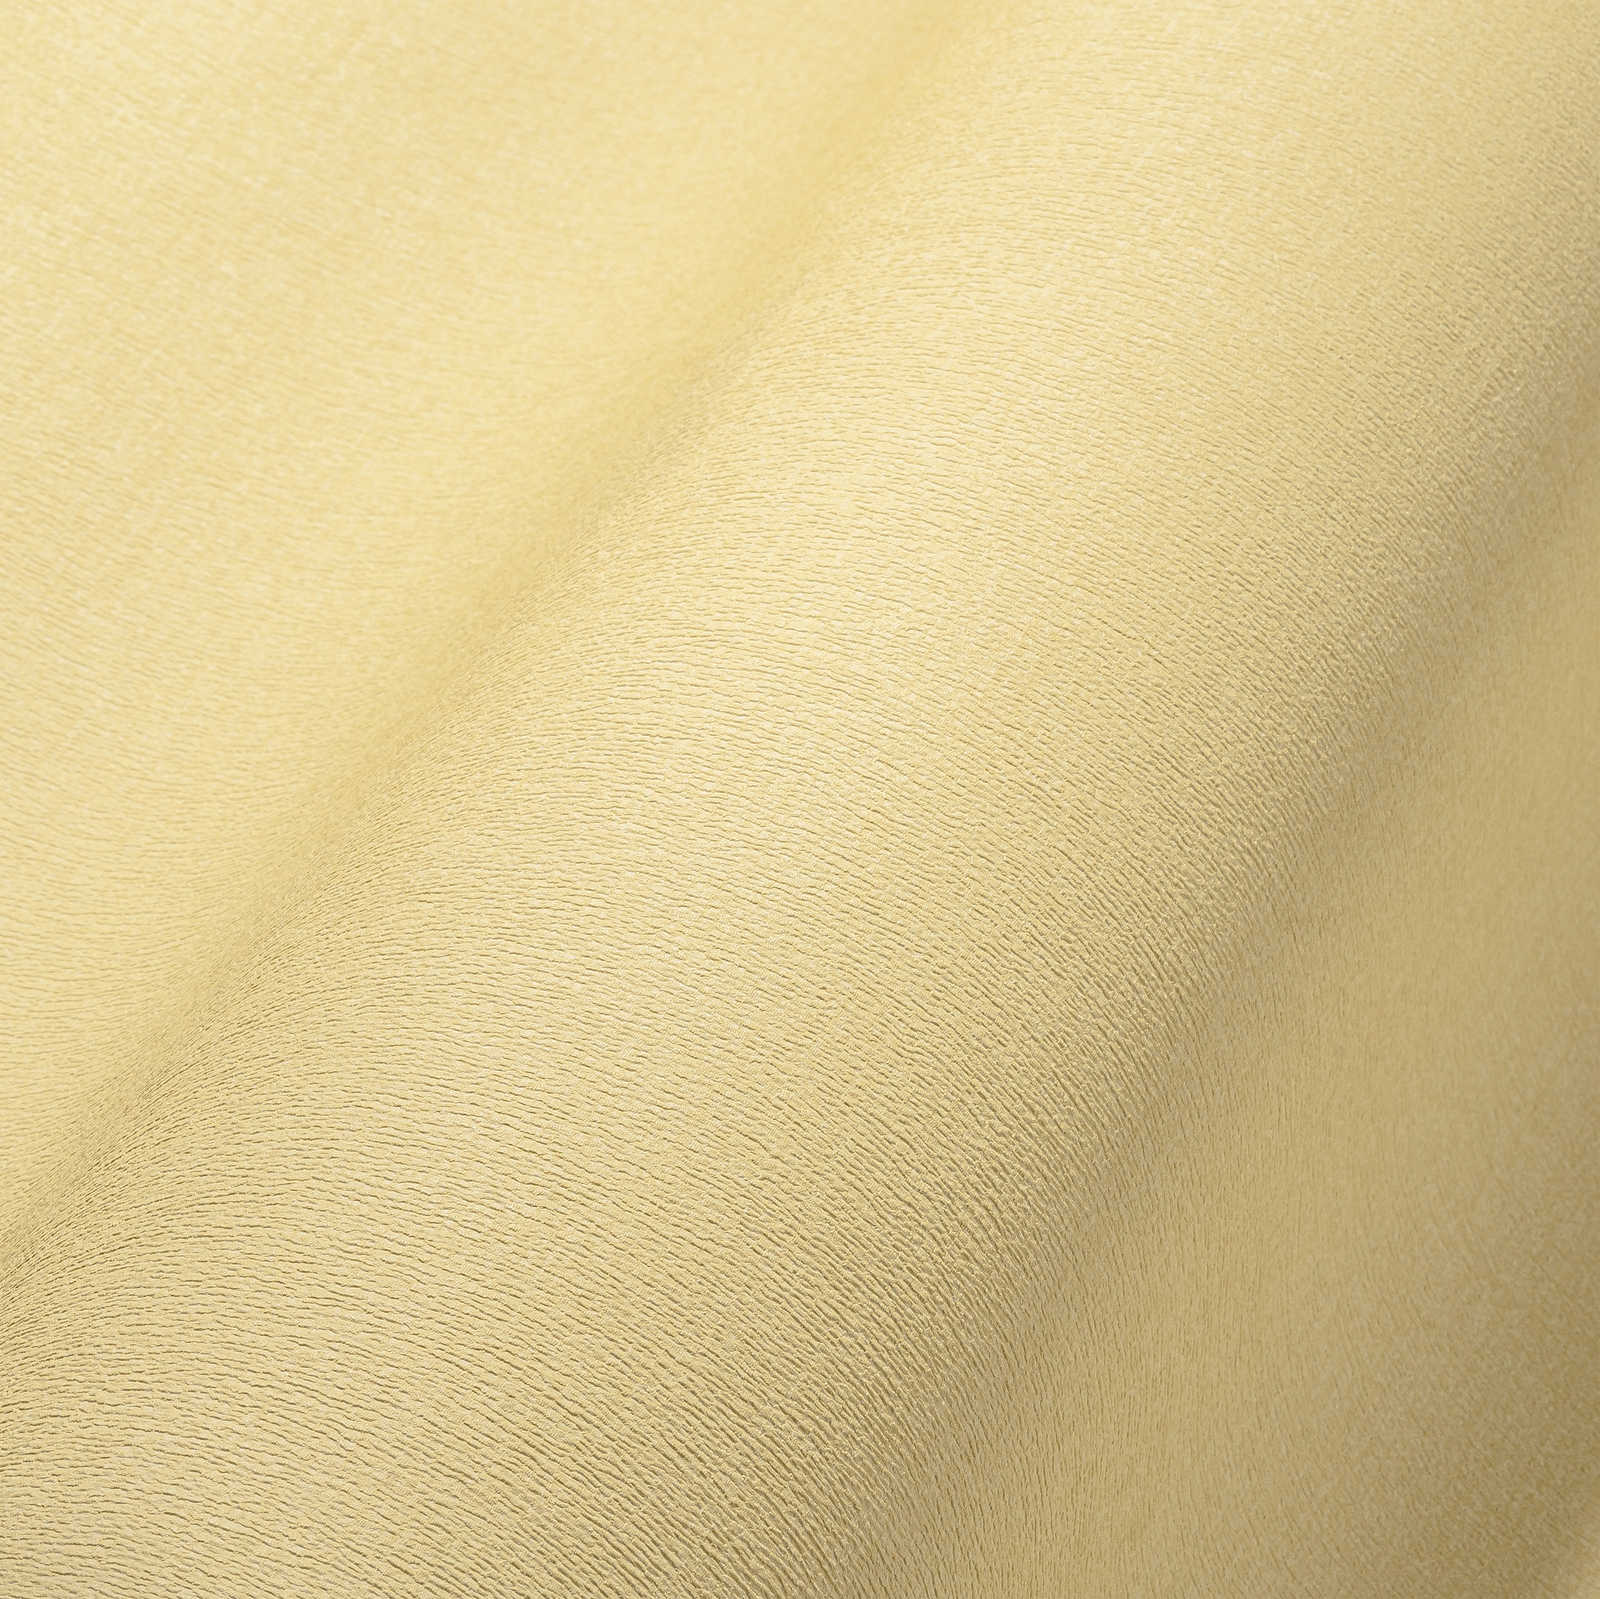             Einfarbige Uni-Vliestapete in warmen Farbton – Gelb
        